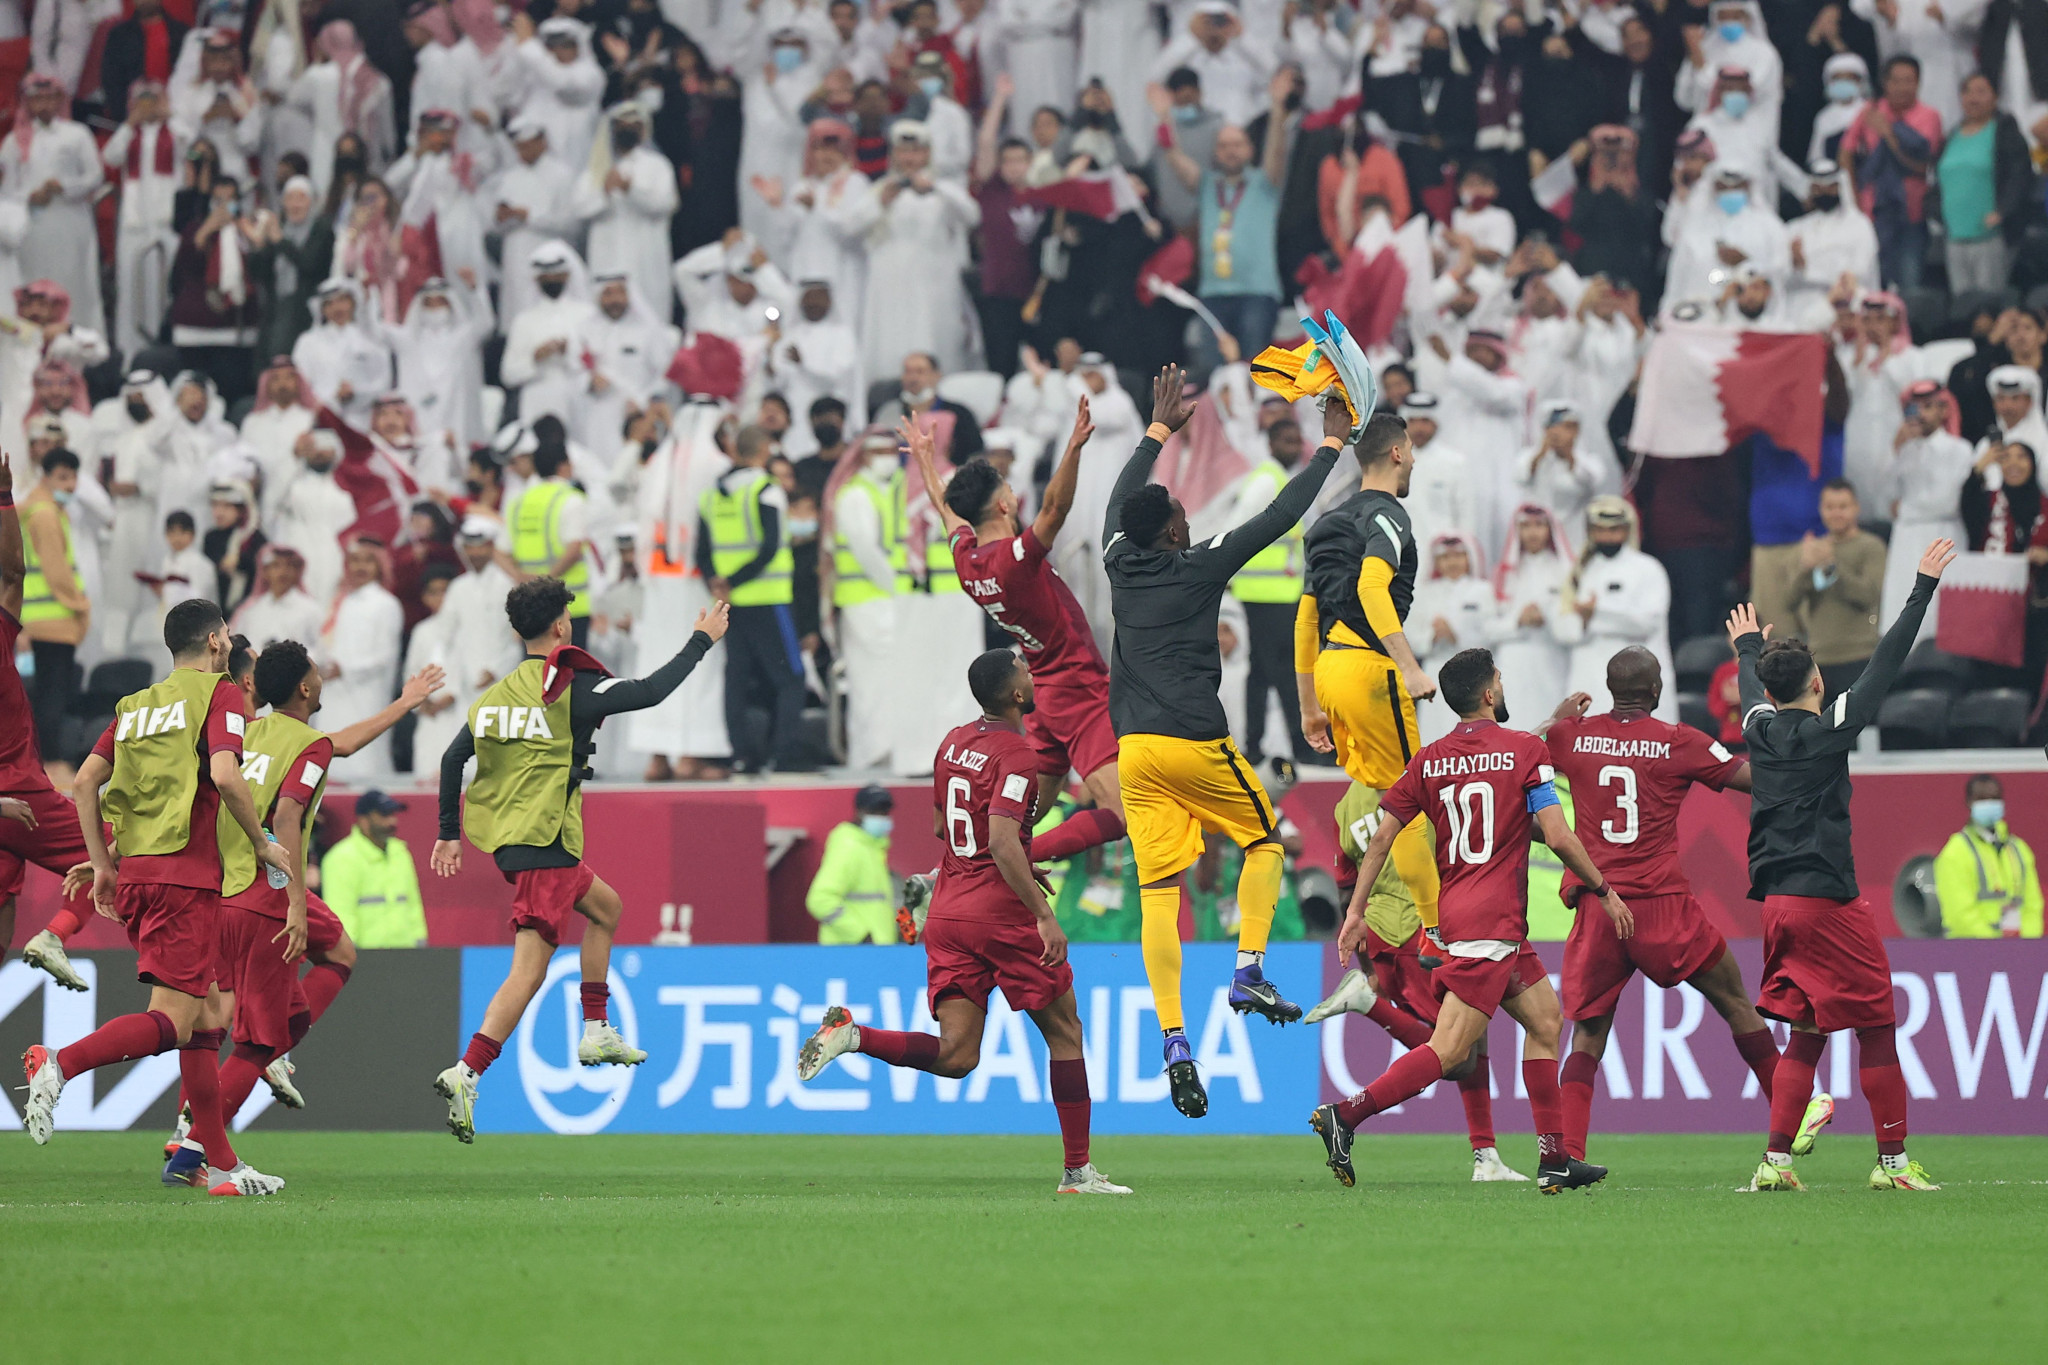 Qatar hit five against UAE to reach FIFA Arab Cup semi-finals